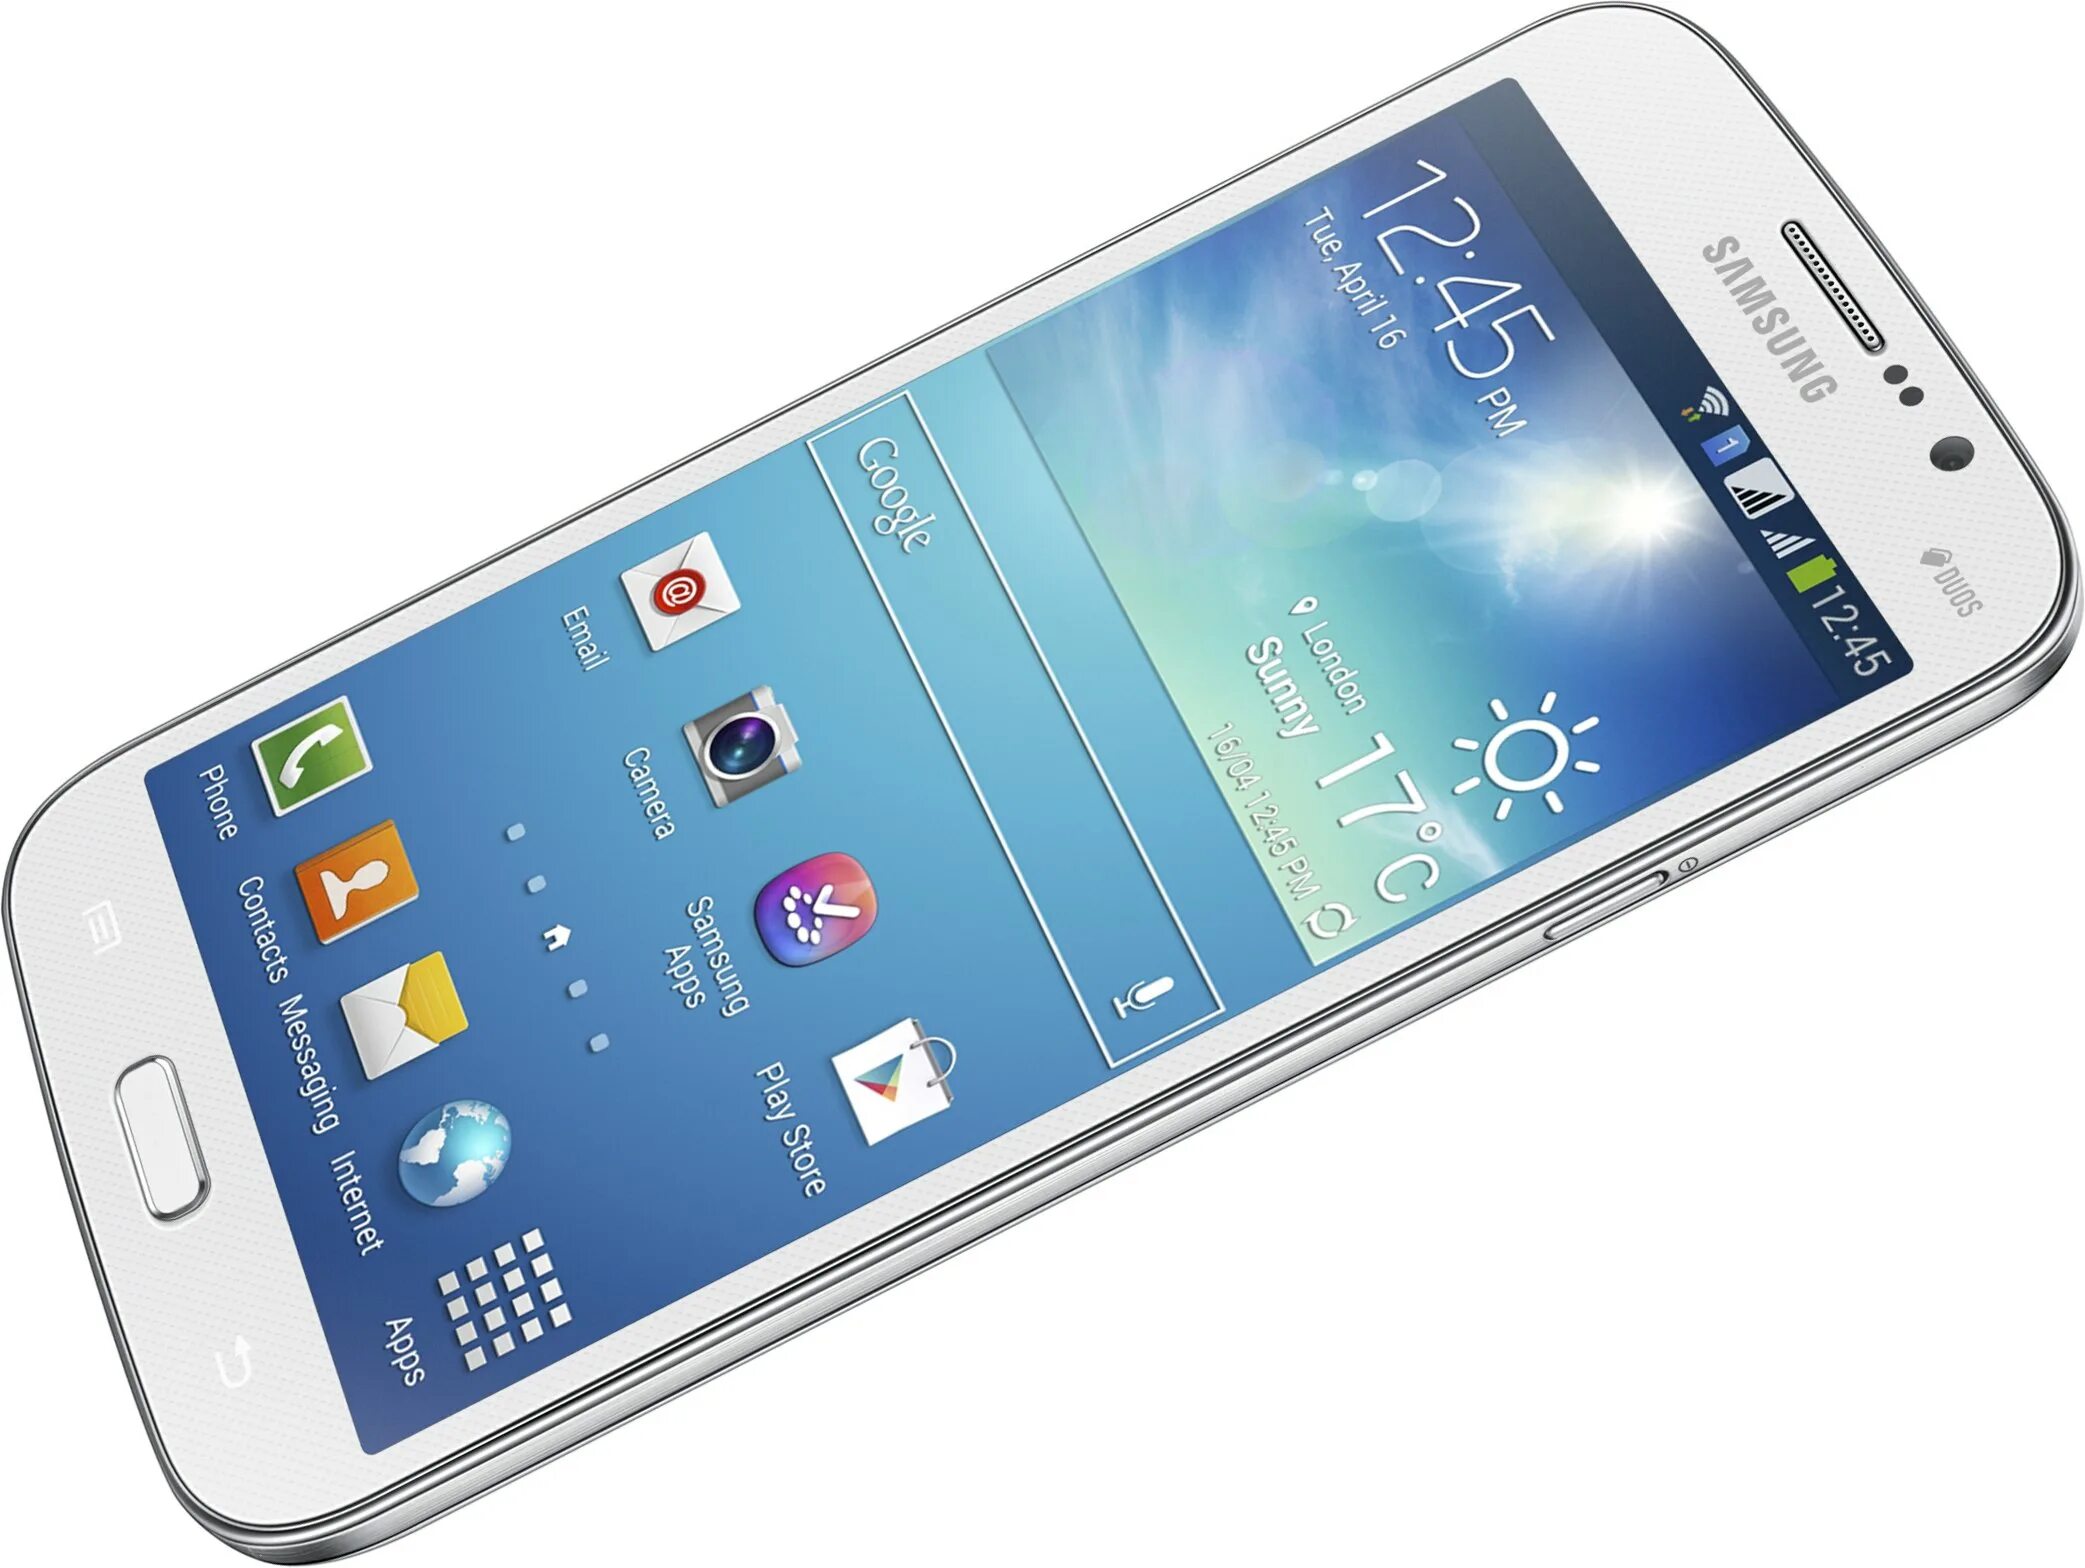 Купить дешевый samsung galaxy. Samsung Mega i9152. Samsung Galaxy Mega 5.8. Samsung Galaxy gt i9152. Samsung Galaxy Mega gt i9152.